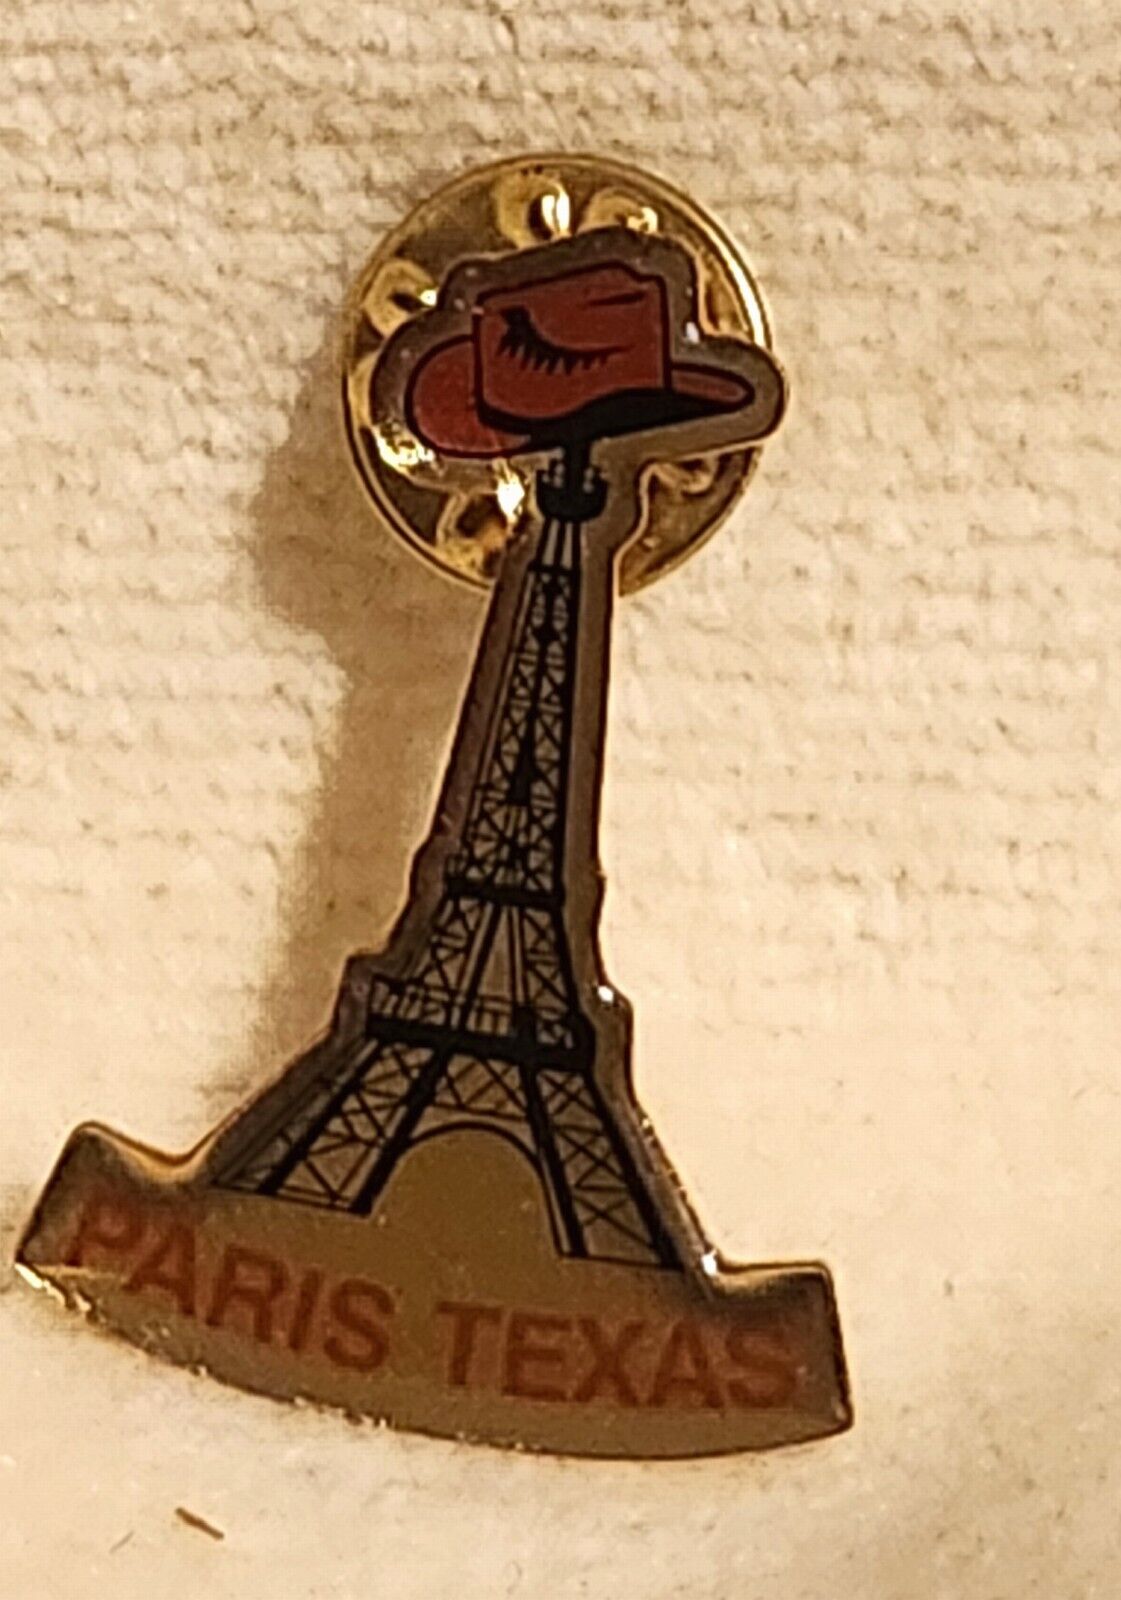 PARIS TEXAS PIN